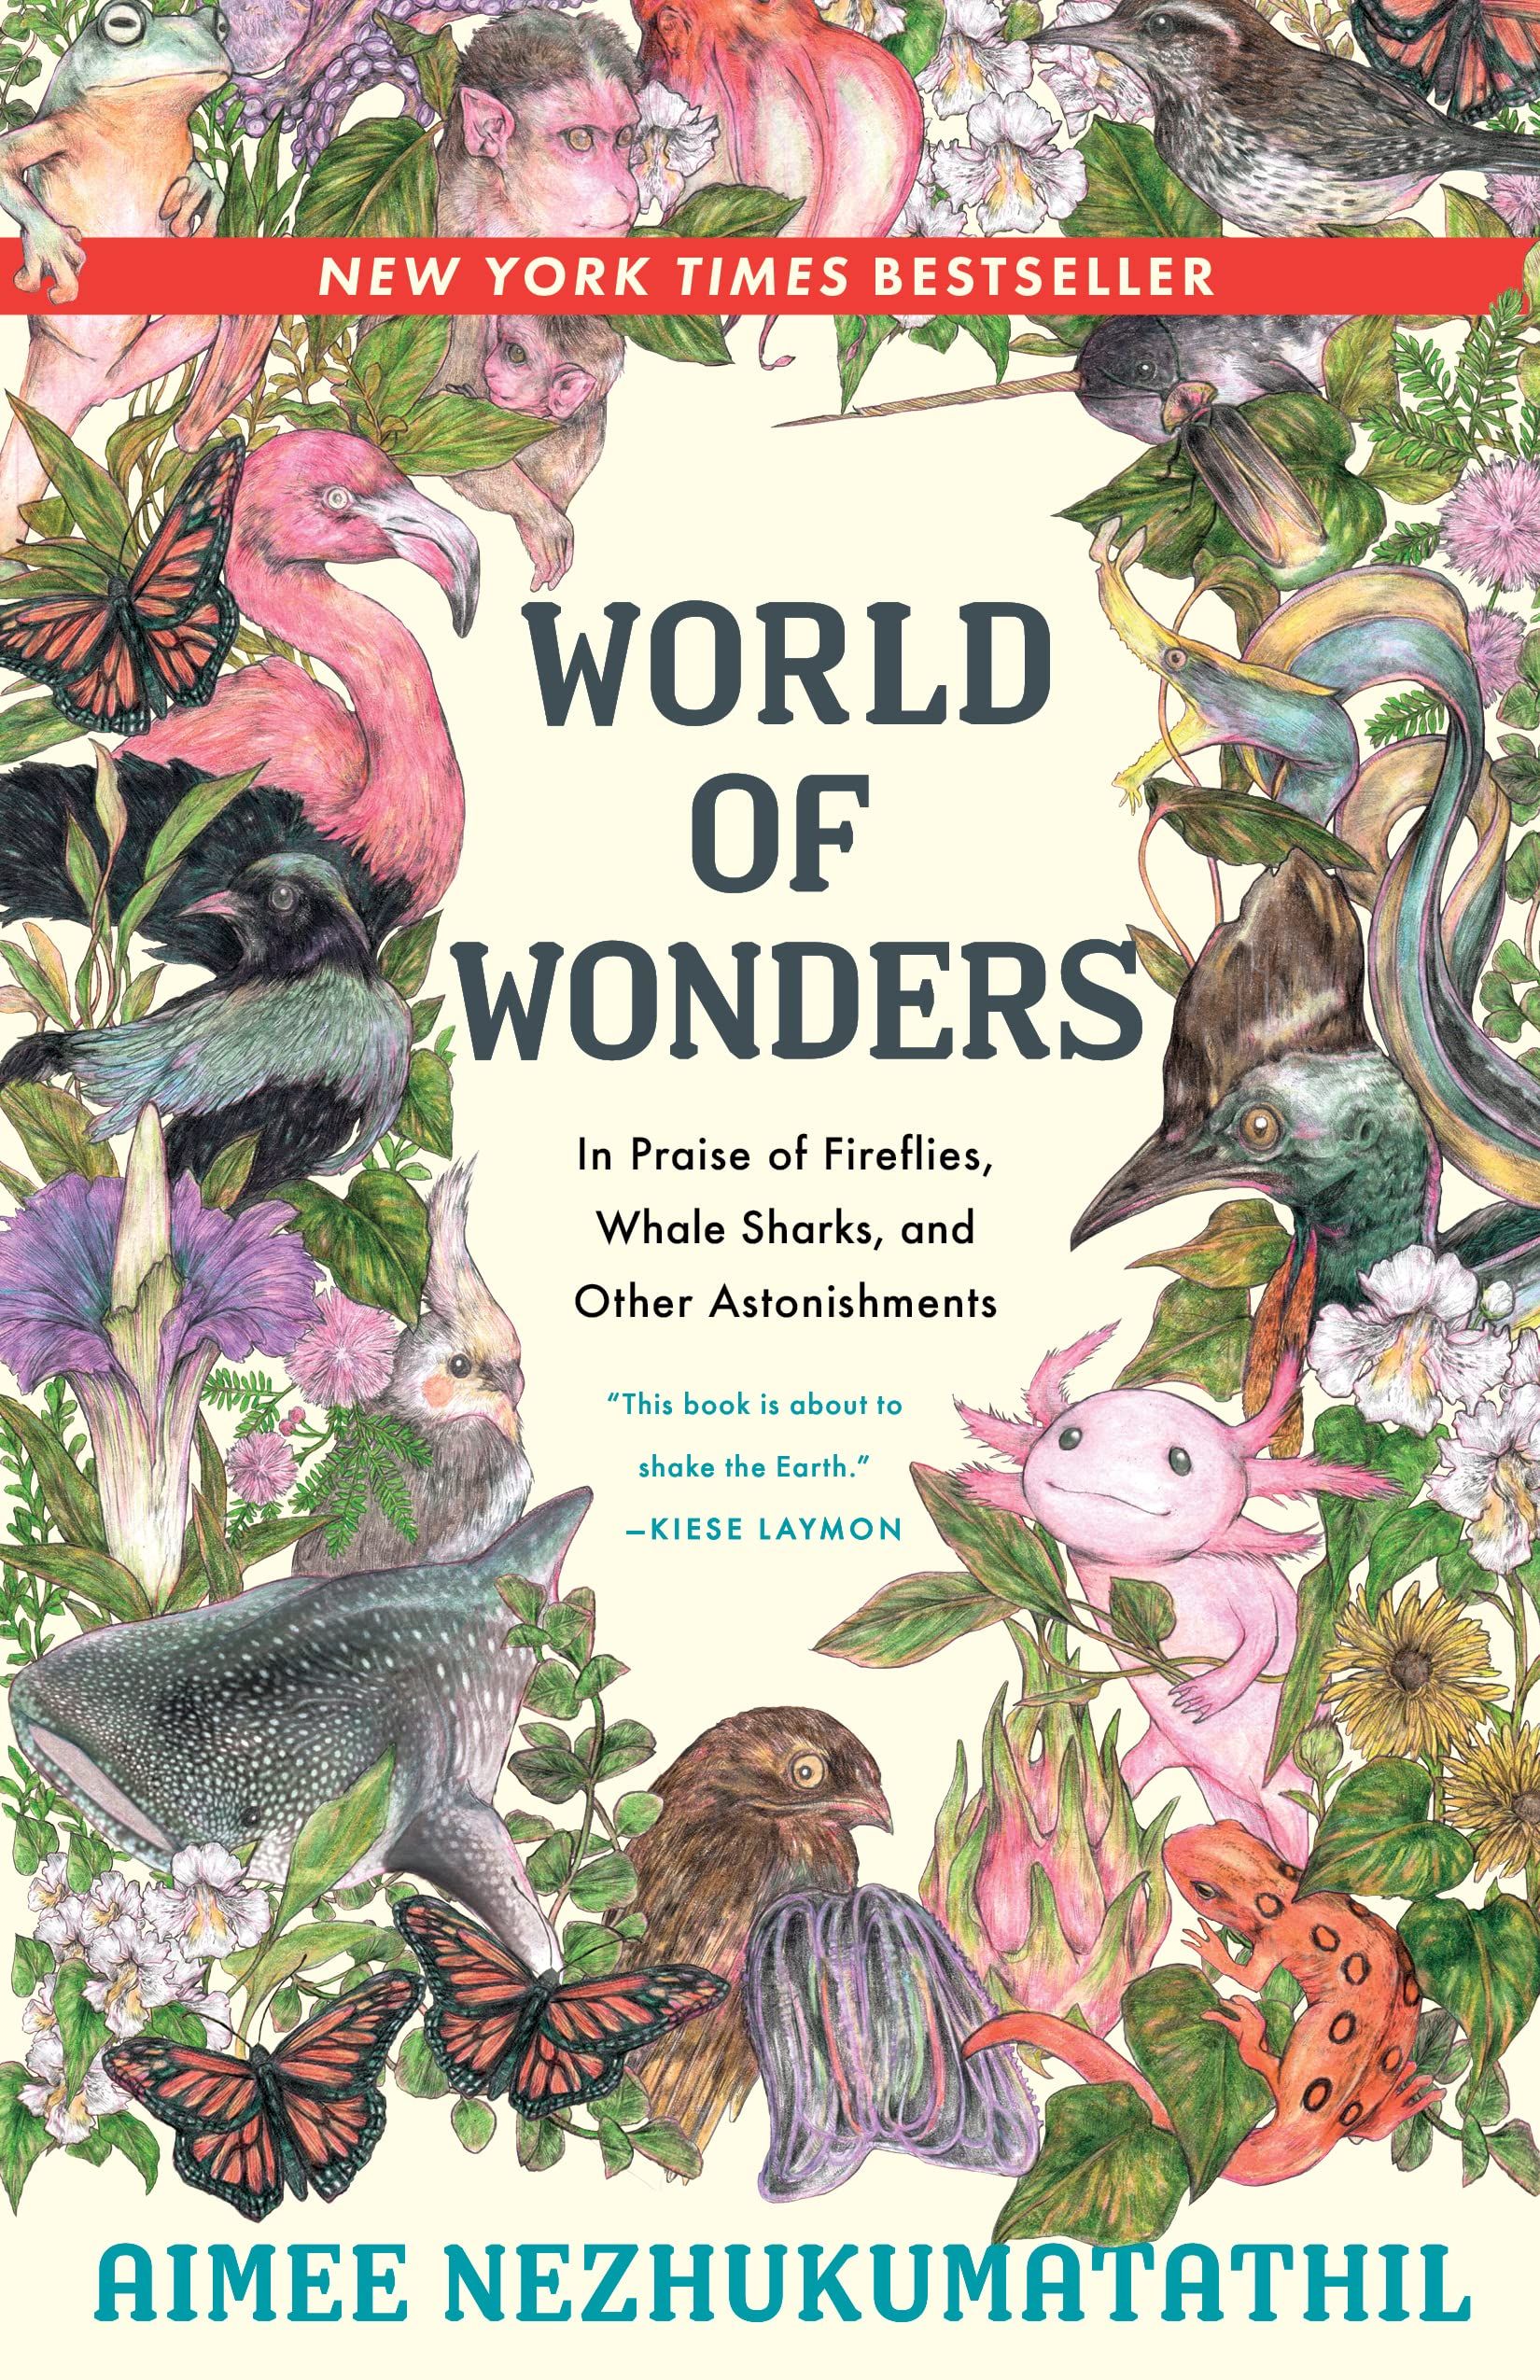 World of Wonders by Aimee Nezhukumatathil cover